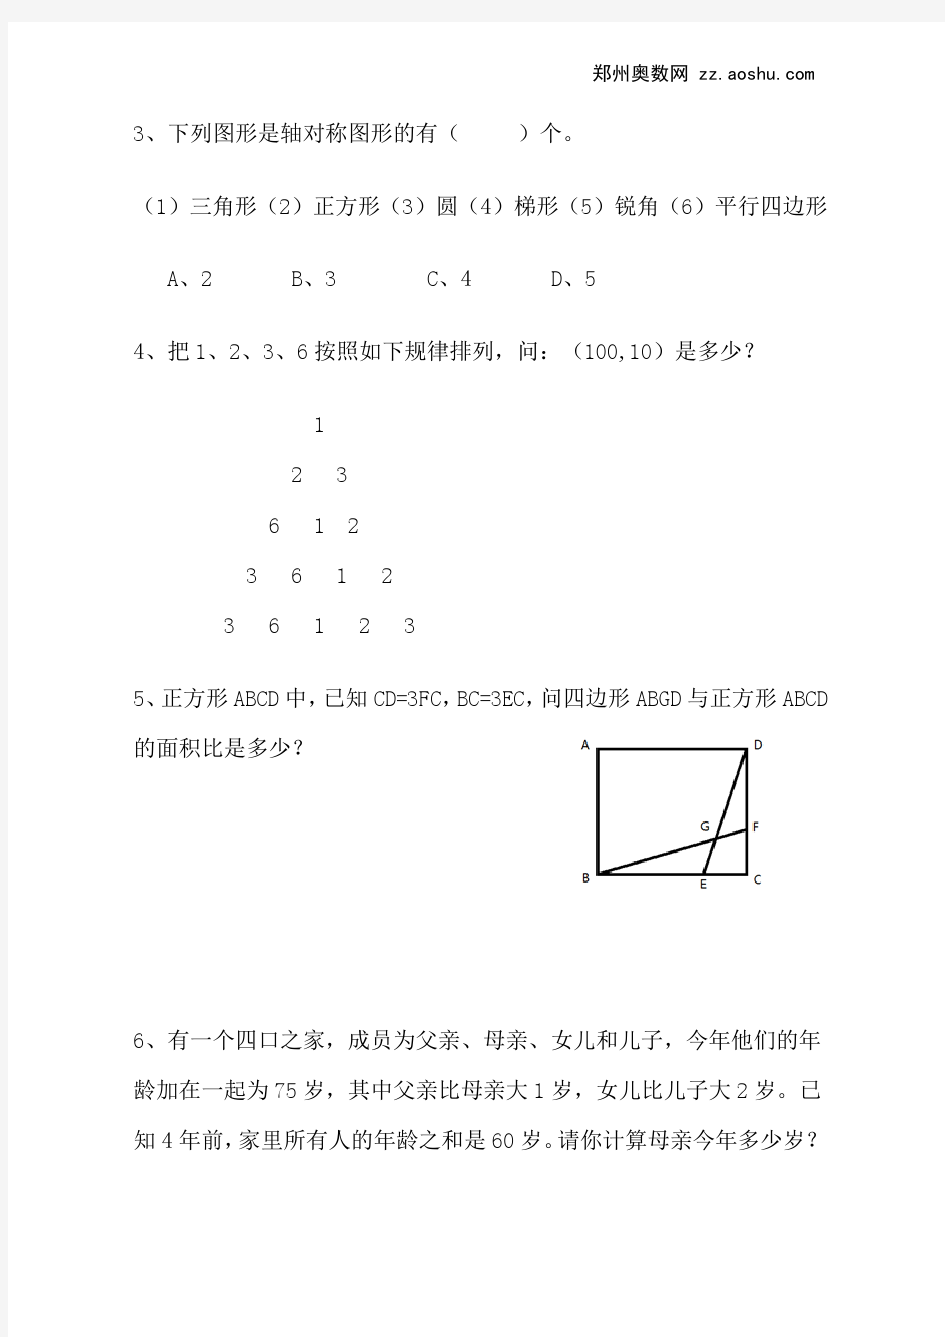 2013年小学六年级数学小升初考试试题及答案【郑州实验外国语中学】